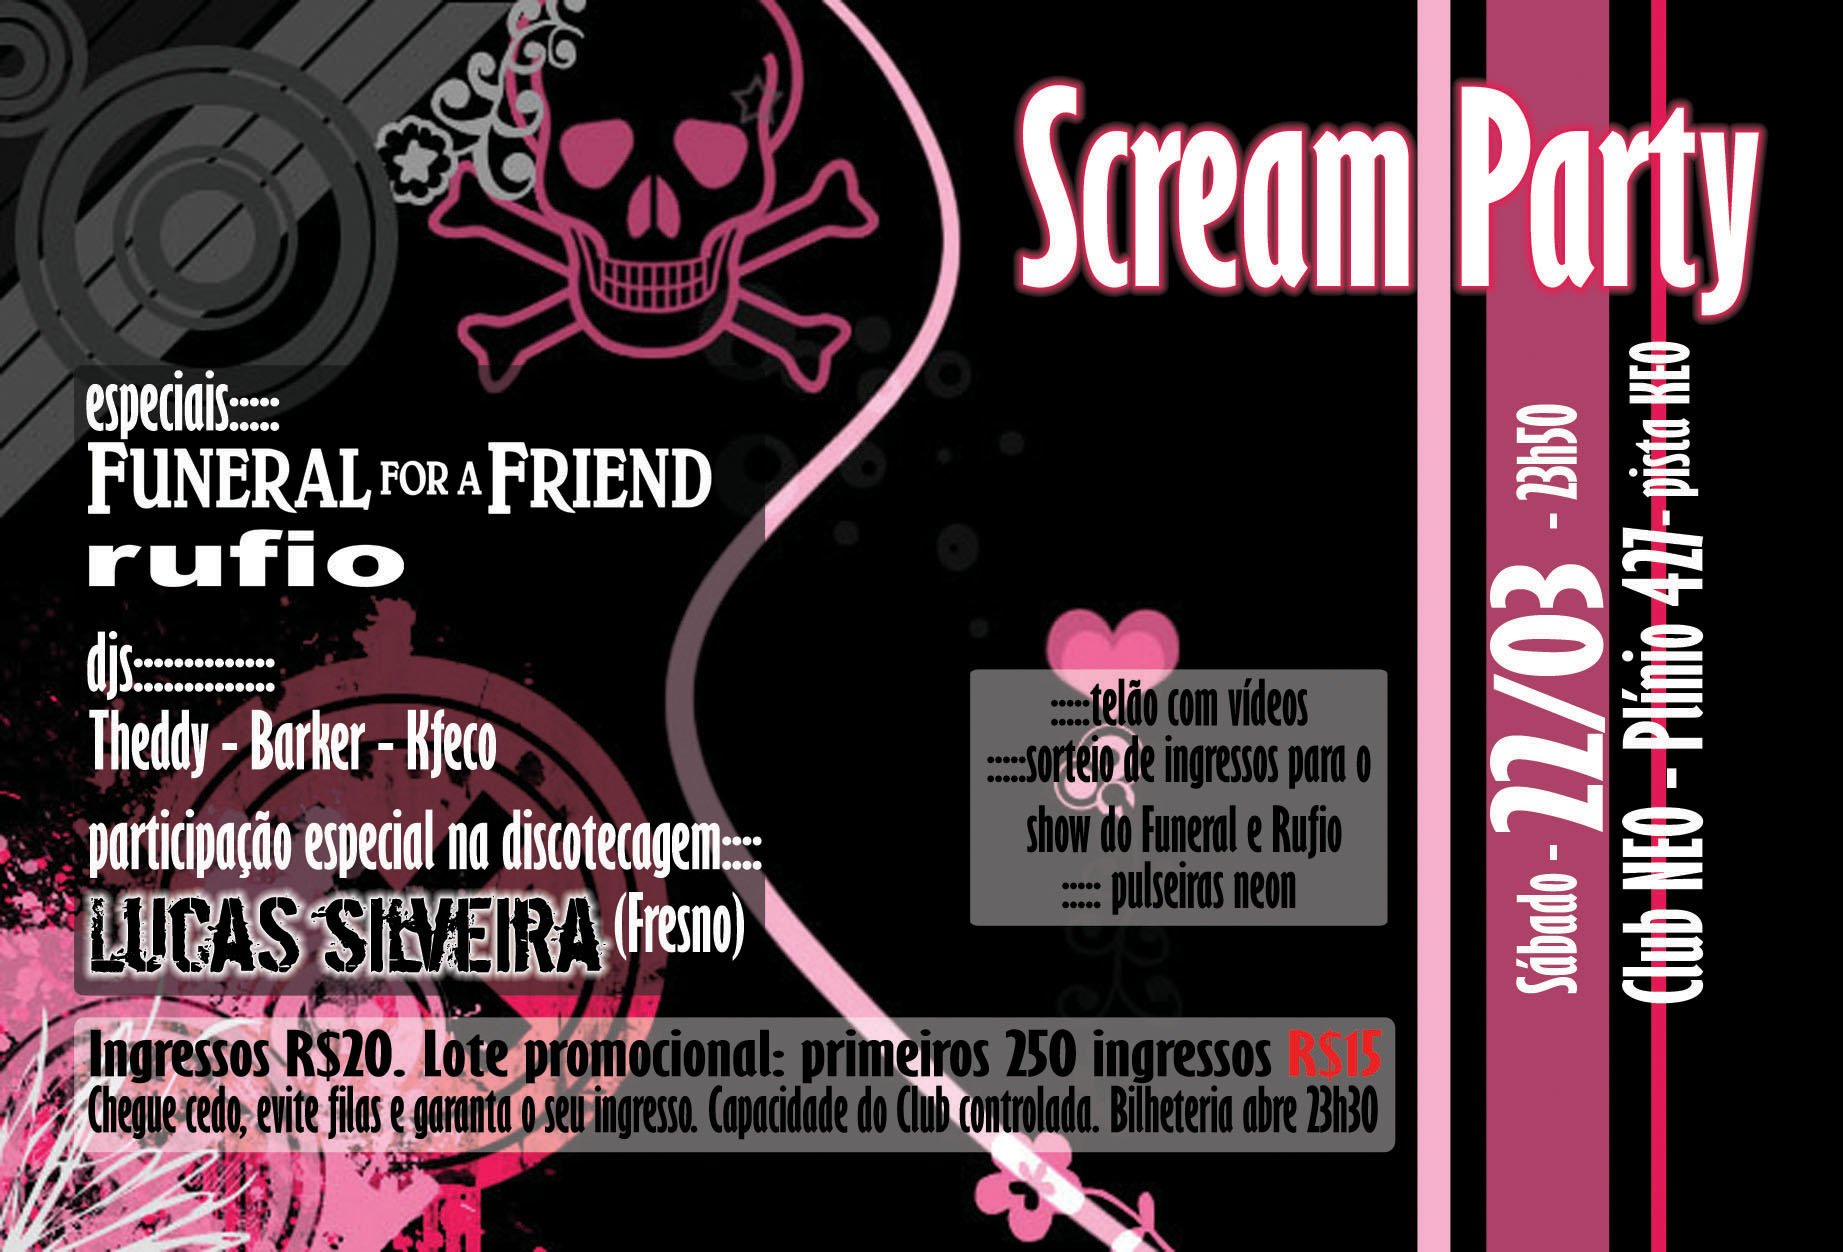 Scream Party at Club NEO (Porto Alegre) on 22 Mar 2008 | Last.fm